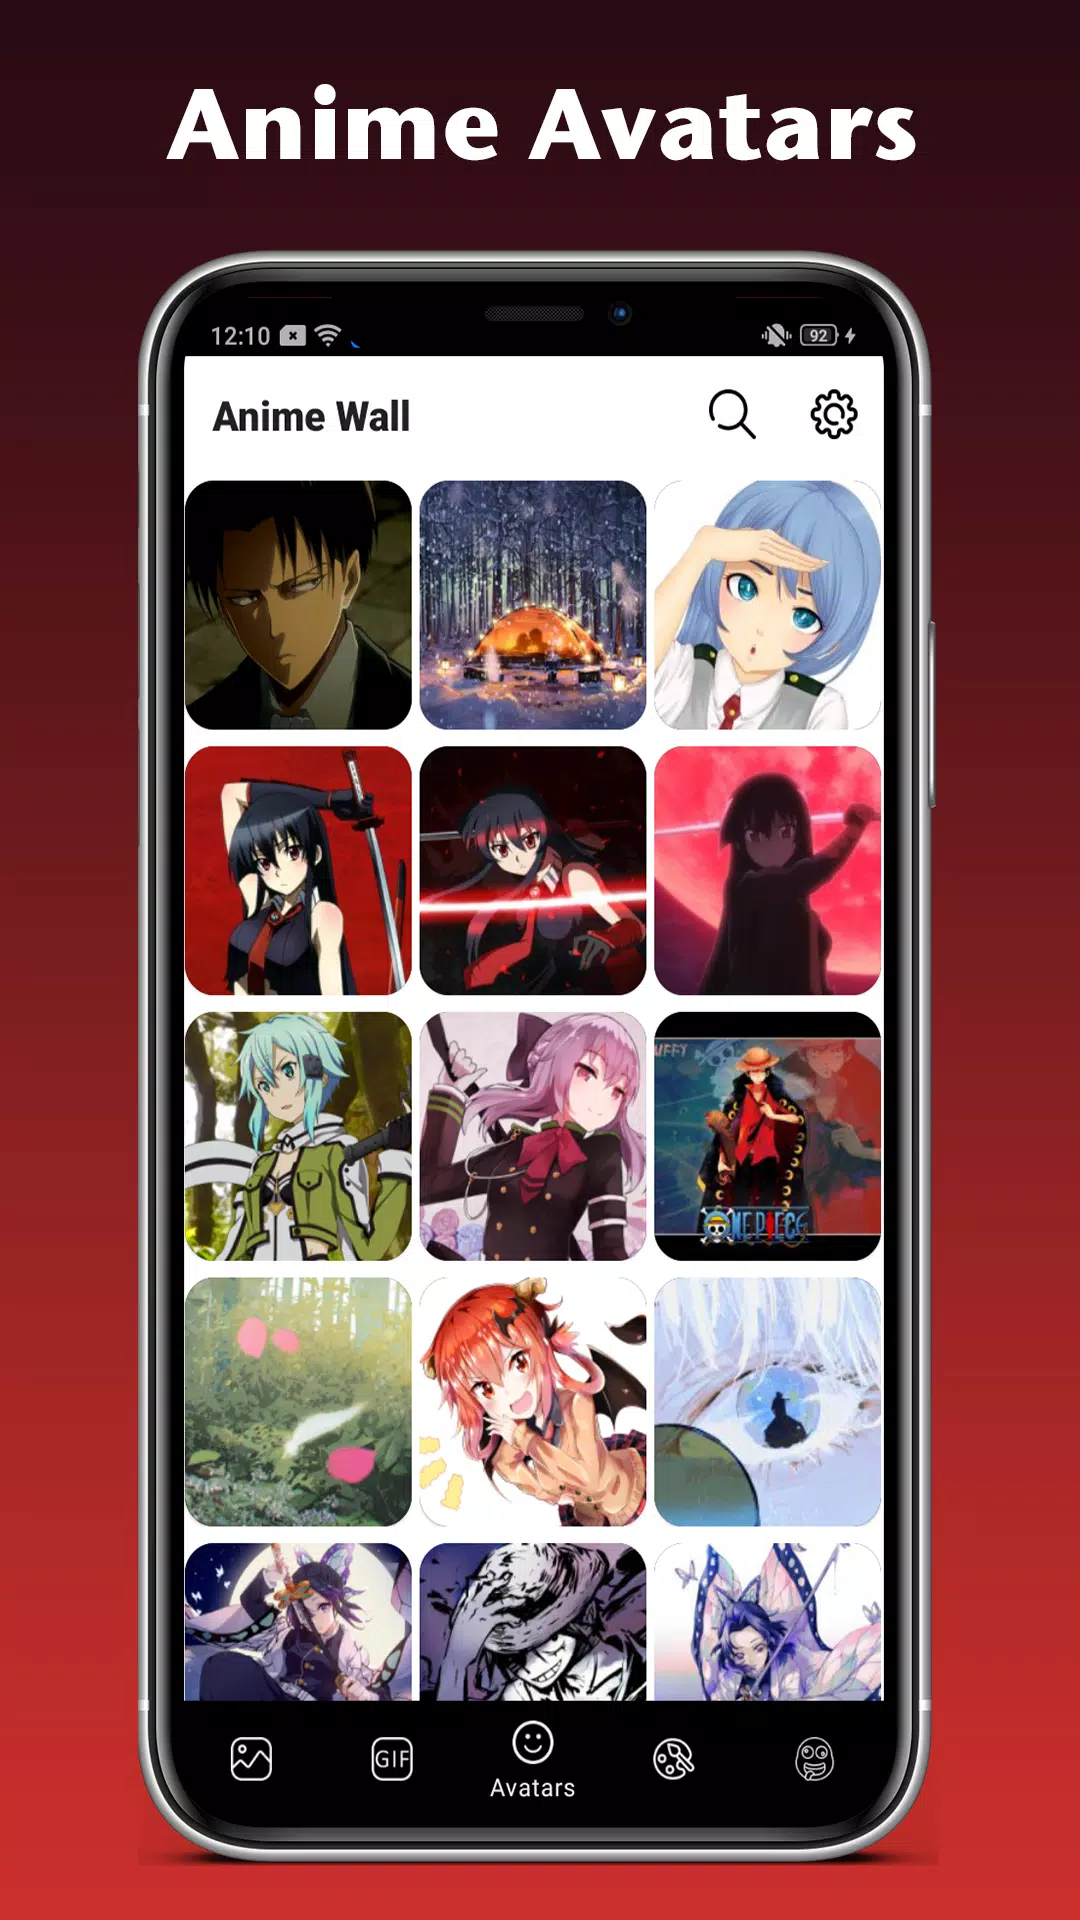 Anime Fanz walllpapers APK pour Android Télécharger